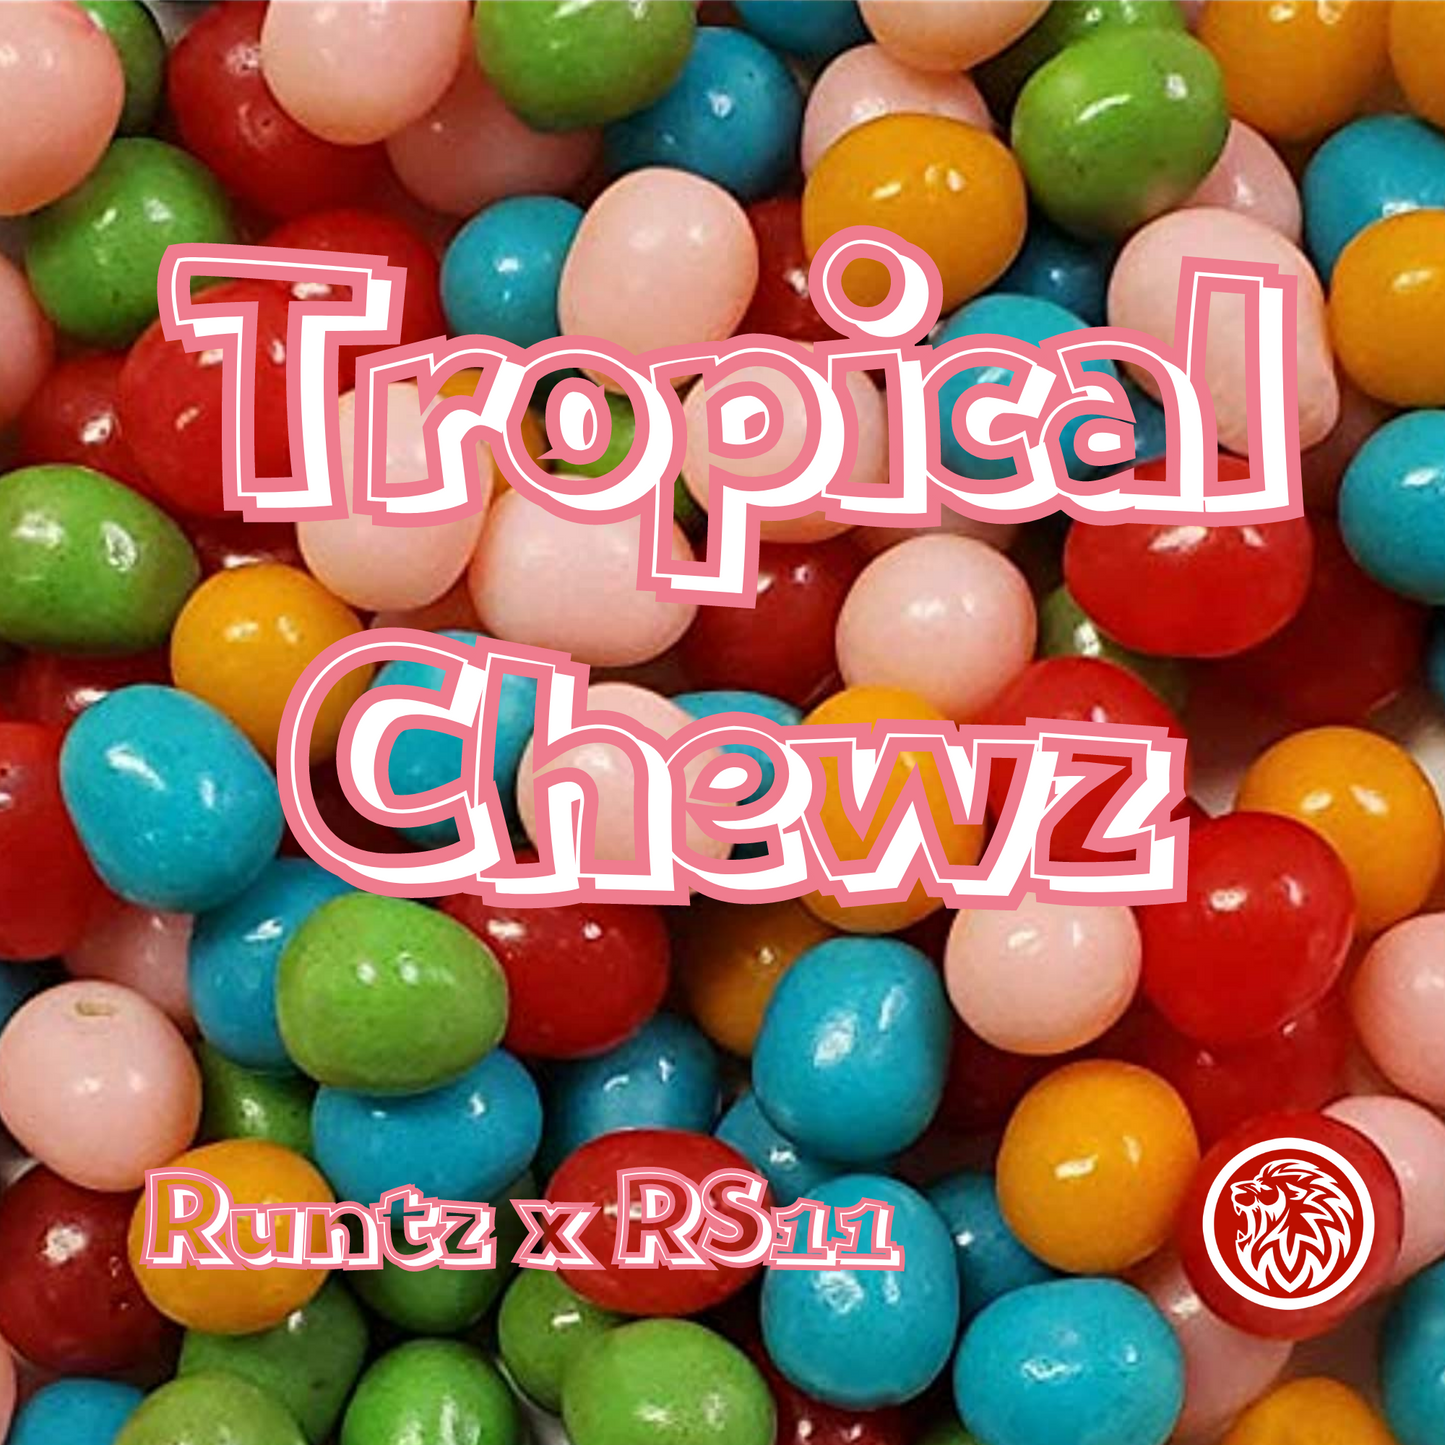 Tropical Chewz, RUNTZ x RS11 Feminized Seeds